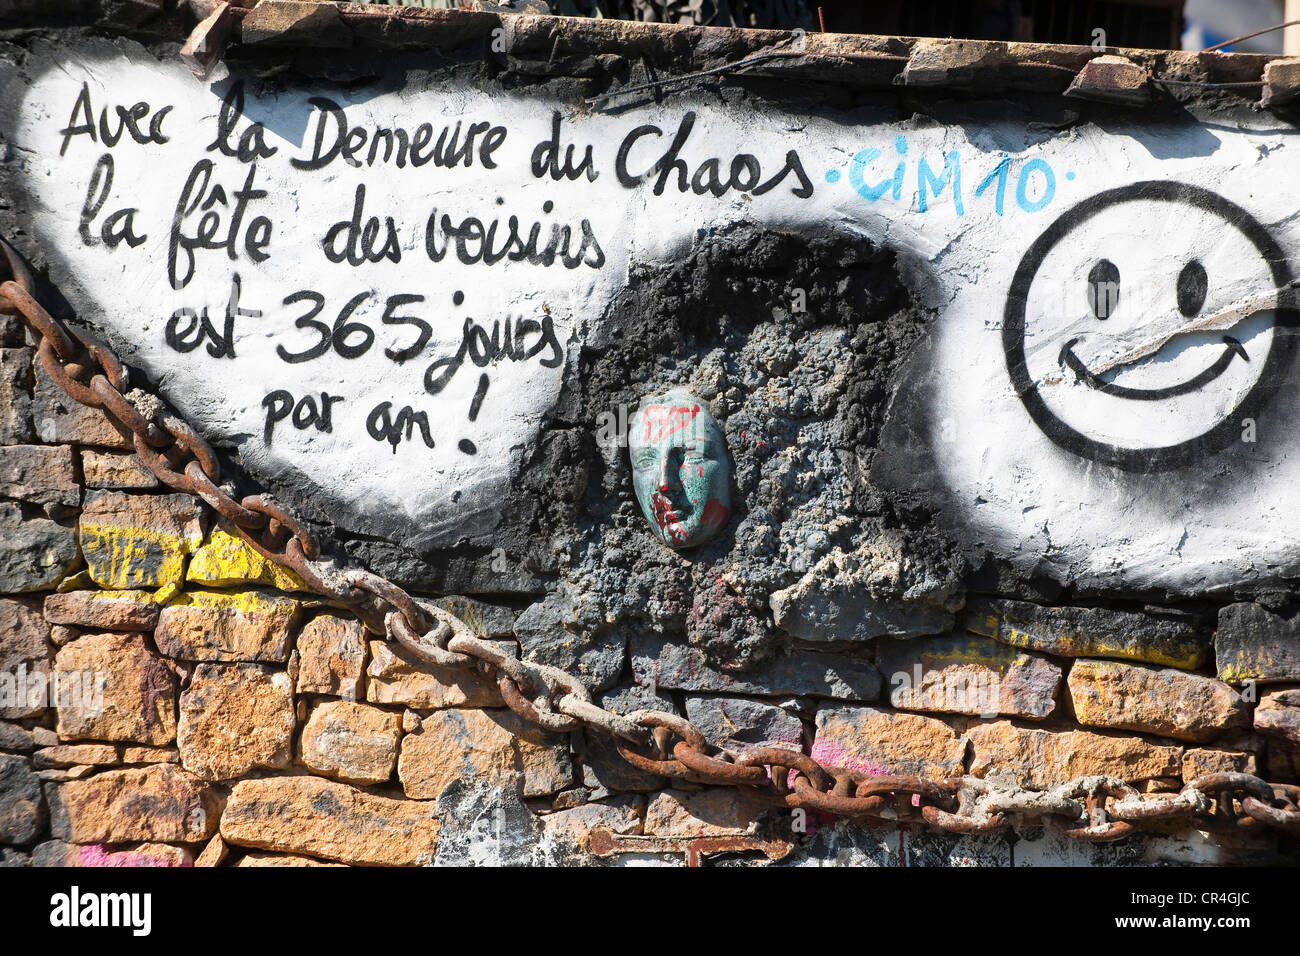 Frankreich, Rhone, Les Monts d ' or, Saint Romain au Mont d ' or, Abode of Chaos (Demeure du Chaos), Eigentum und Kunstwerk von Stockfoto